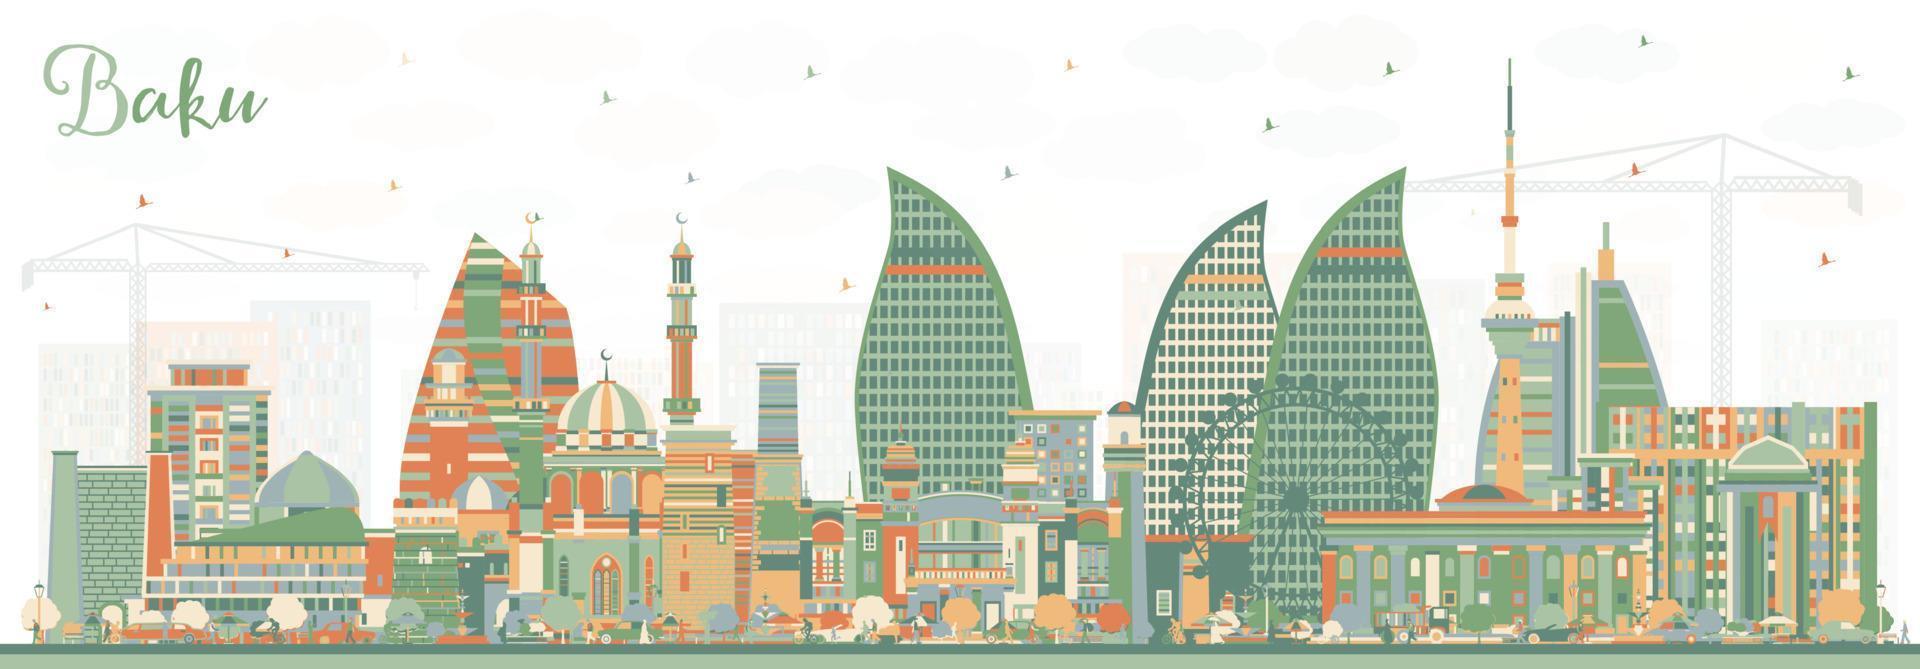 Baku Azerbeidzjan stad horizon met kleur gebouwen. vector illustratie. Baku stadsgezicht met oriëntatiepunten.